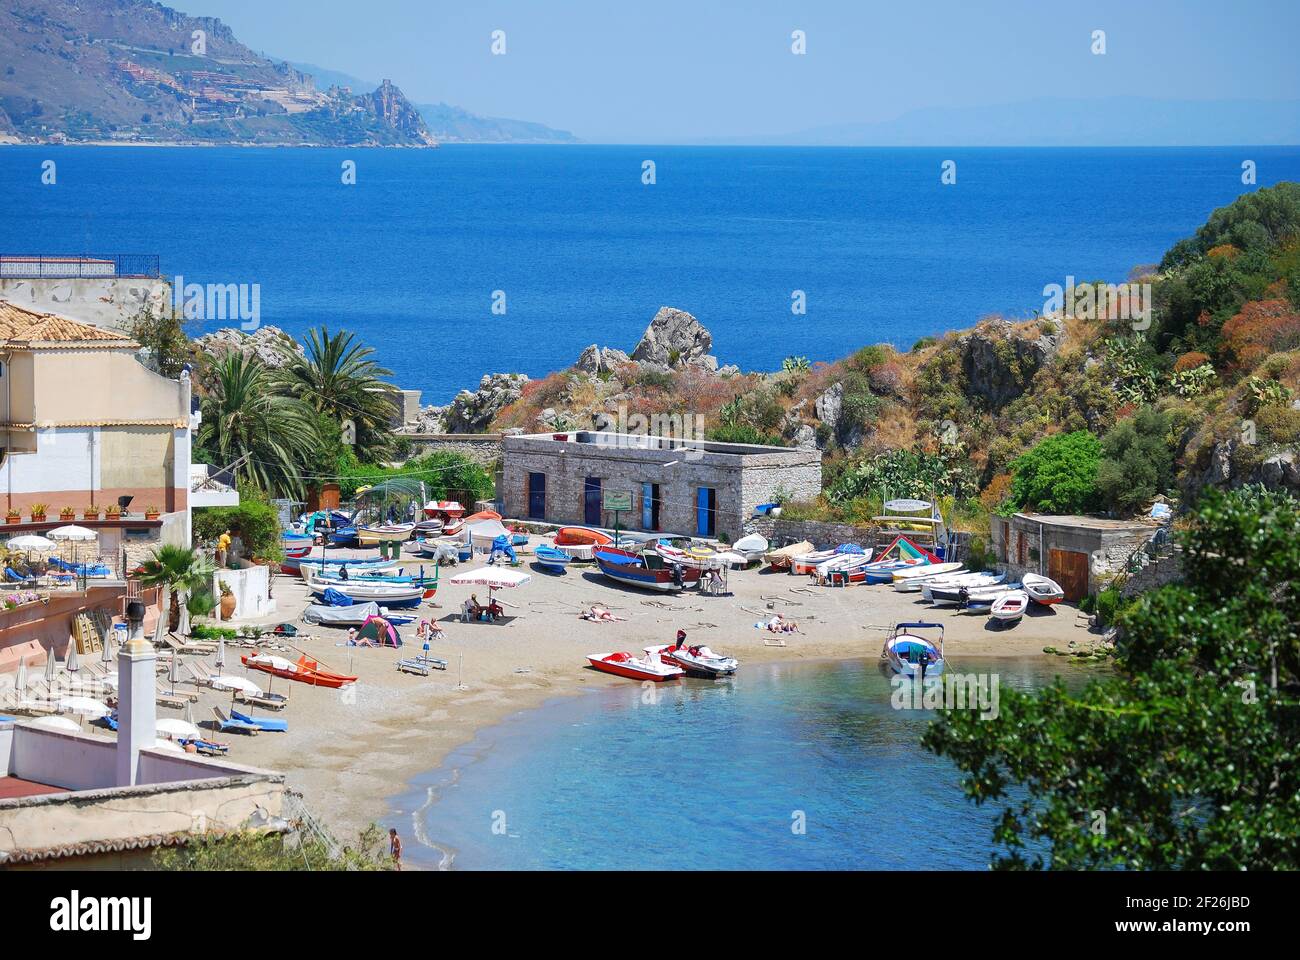 Mazzaro Beach, Taormina, Messina Province, Sicily, Italy Stock Photo